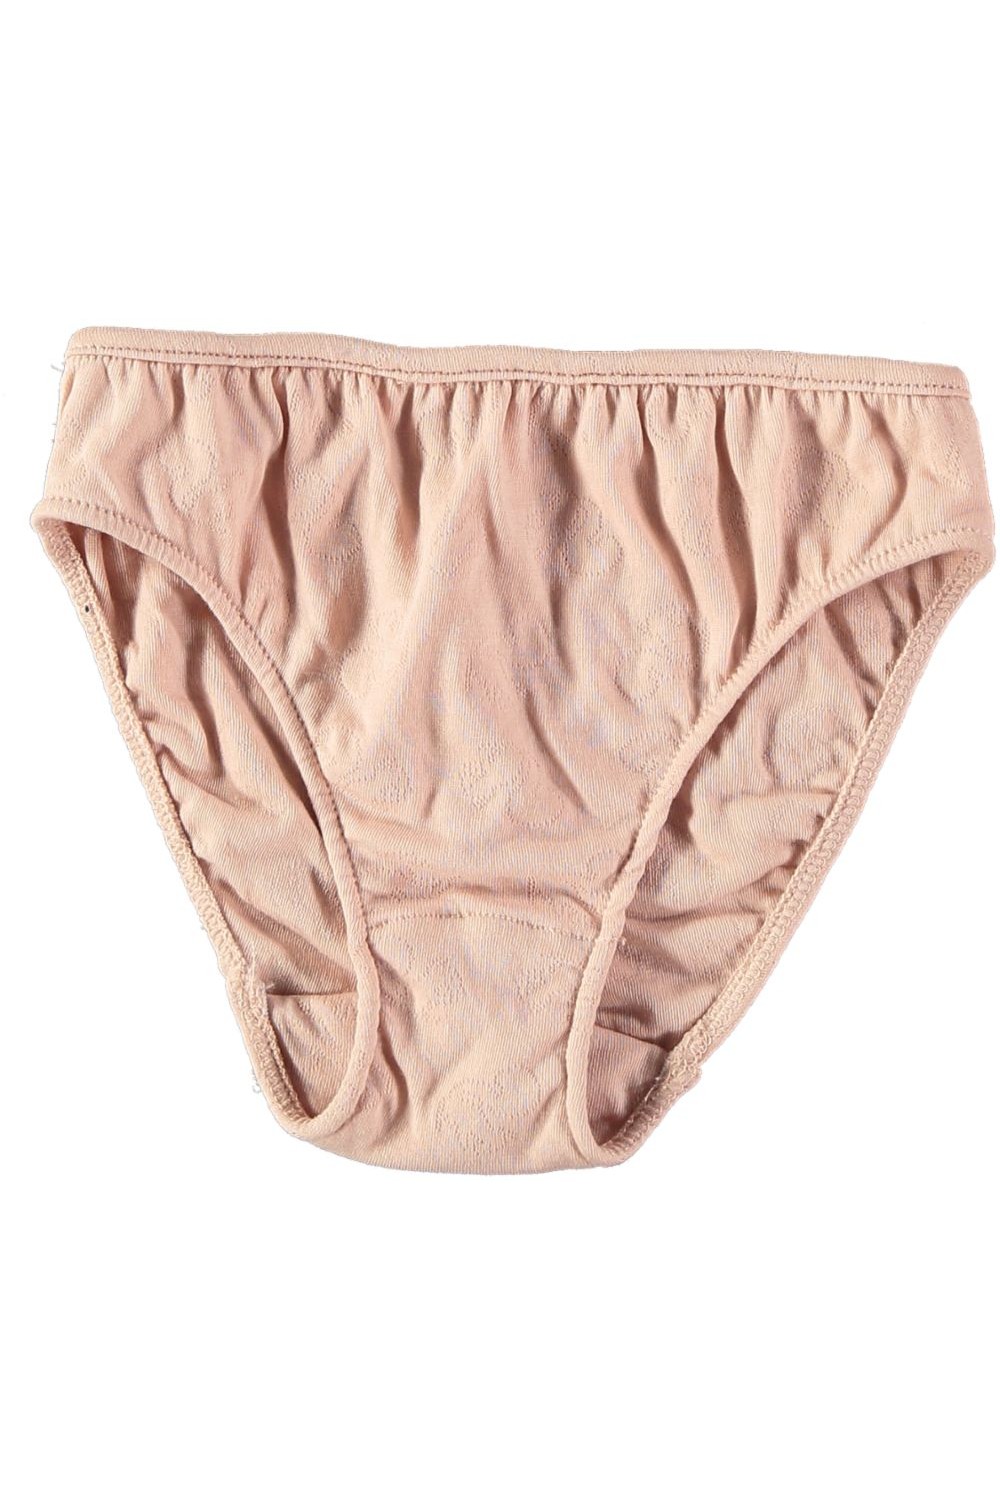 Perfeclan 2pcs sous-vêtements pour Enfants Culottes En Coton Garçons Filles Culottes de Bande Dessinée Culottes 3-8T 